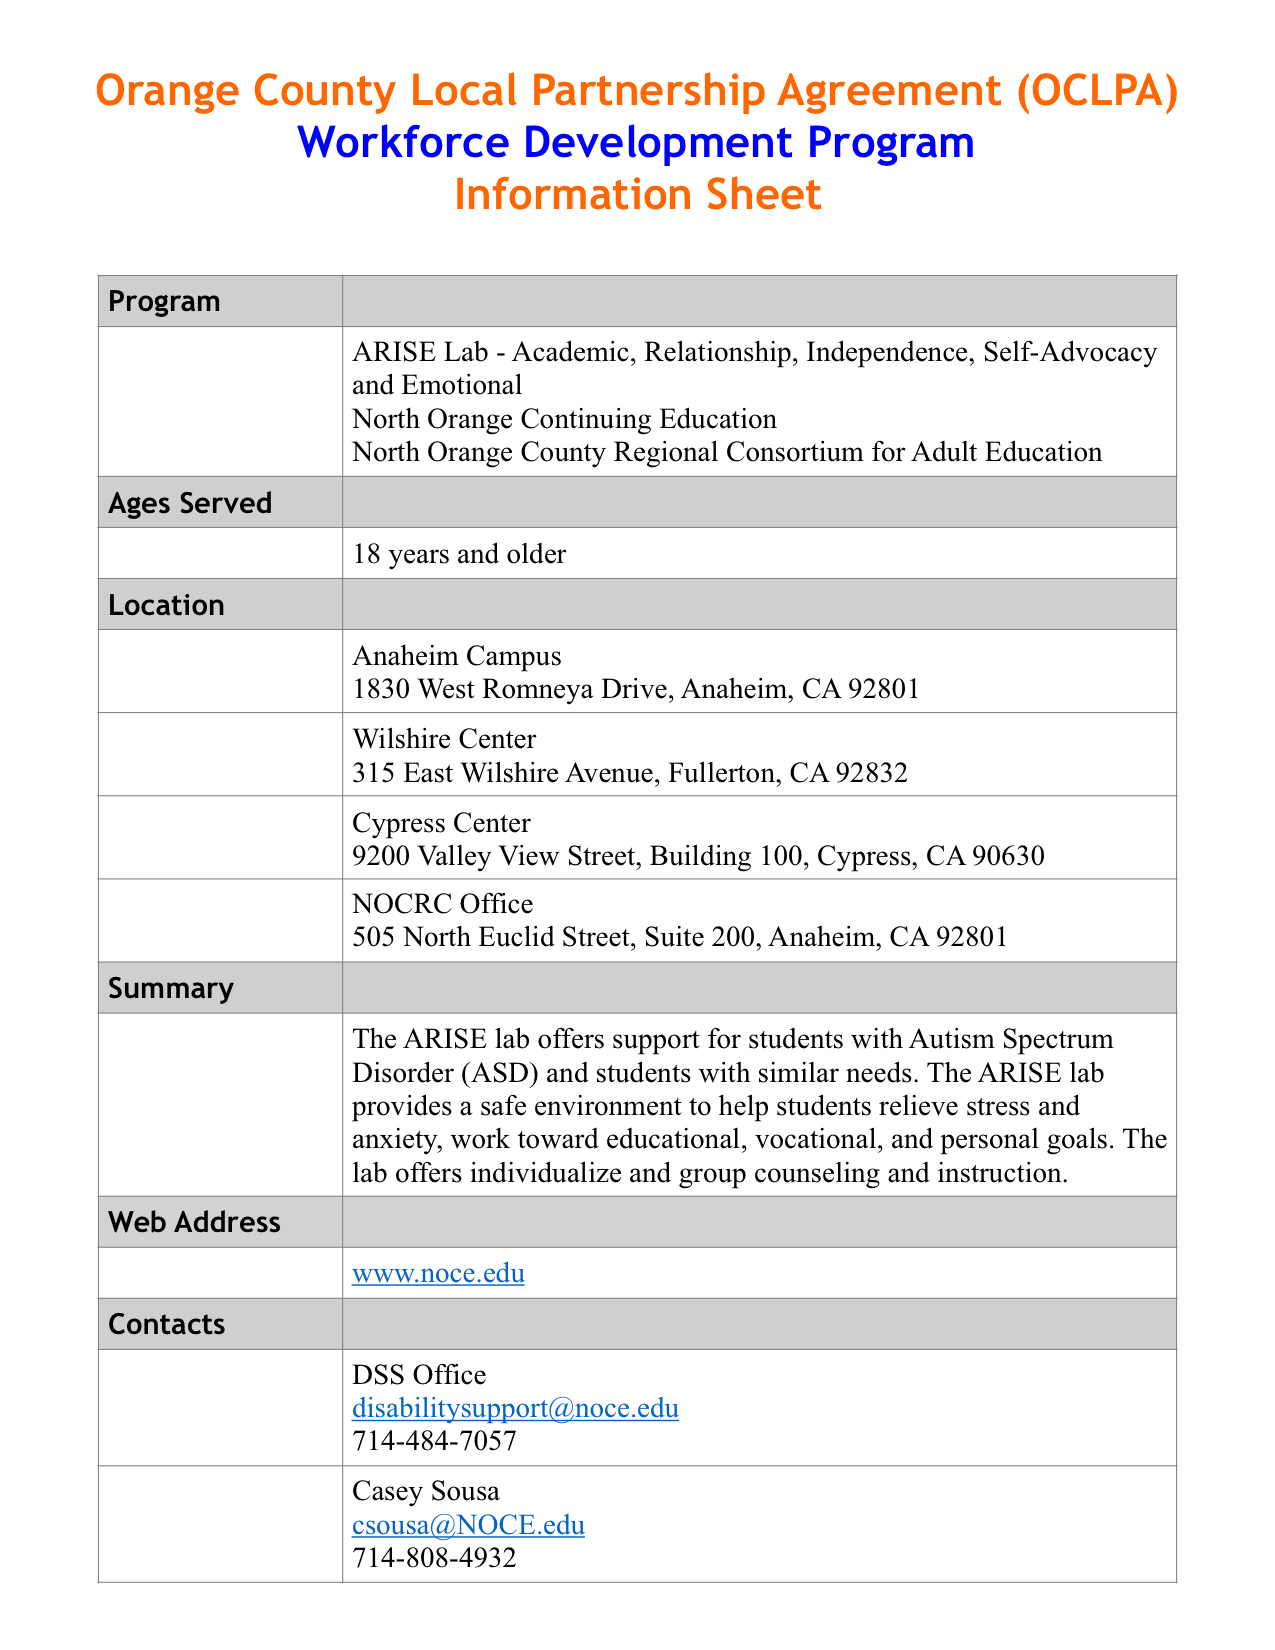 ARISE Lab Information Sheet